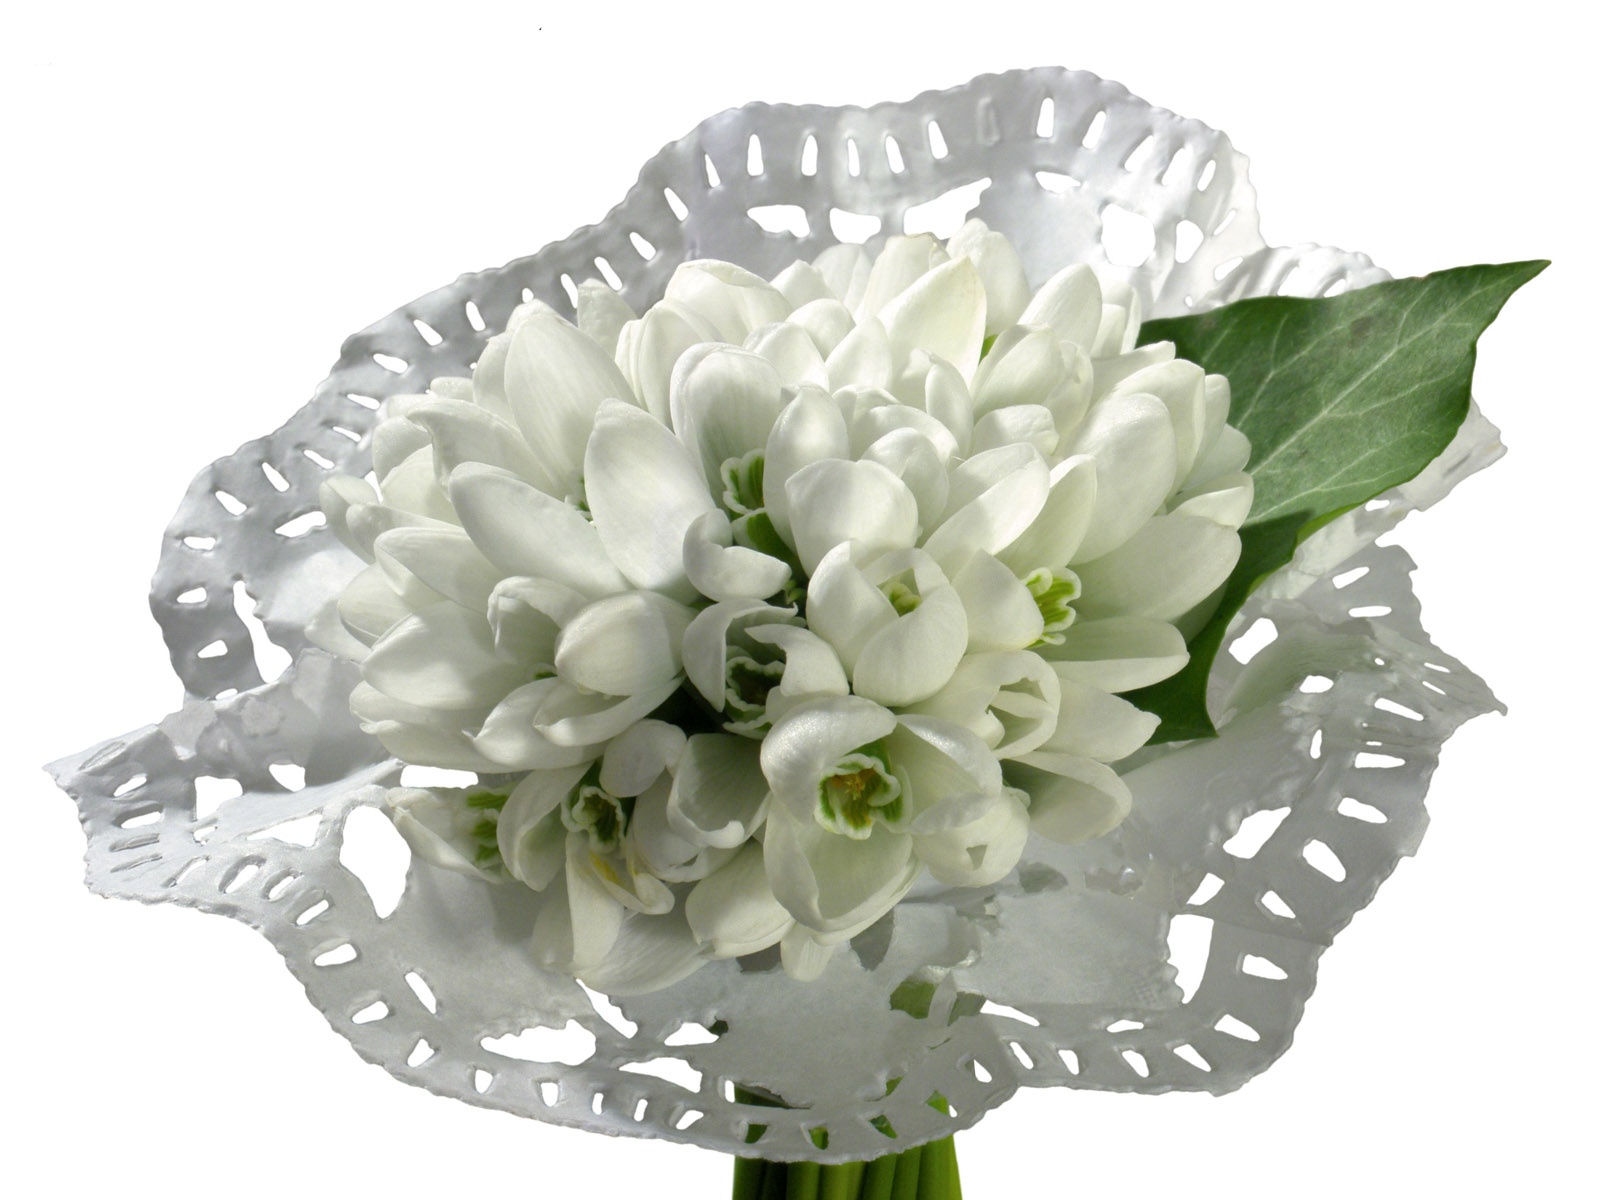 눈같이 흰 꽃 벽지 #8 - 1600x1200